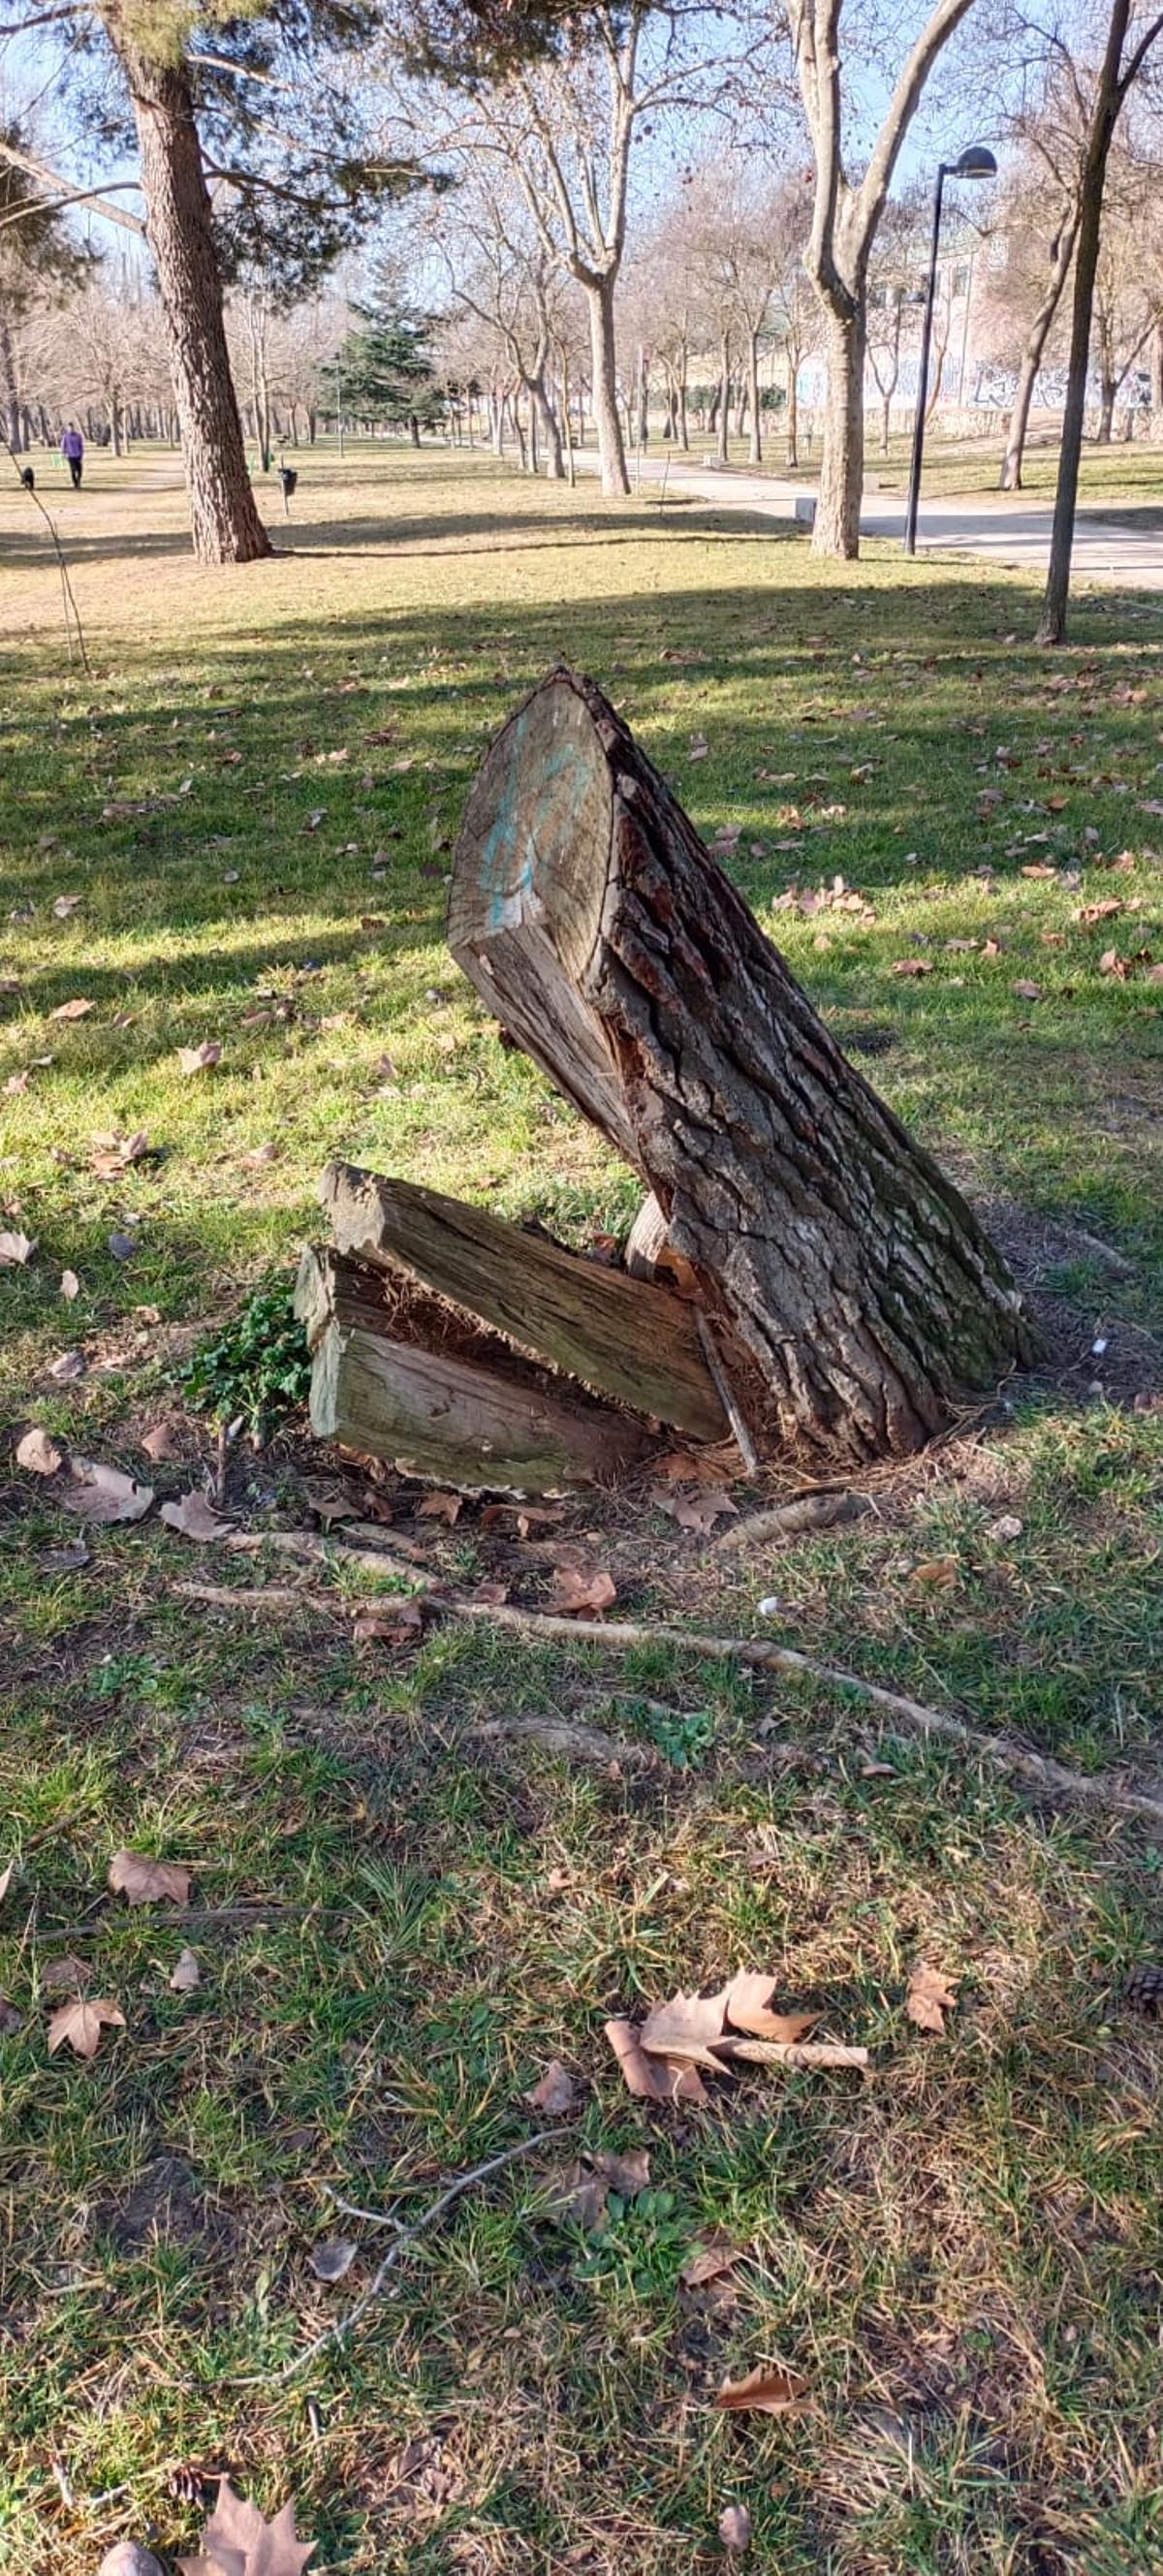 El tocón del pino, antes de transformarse en el cocodrilo.